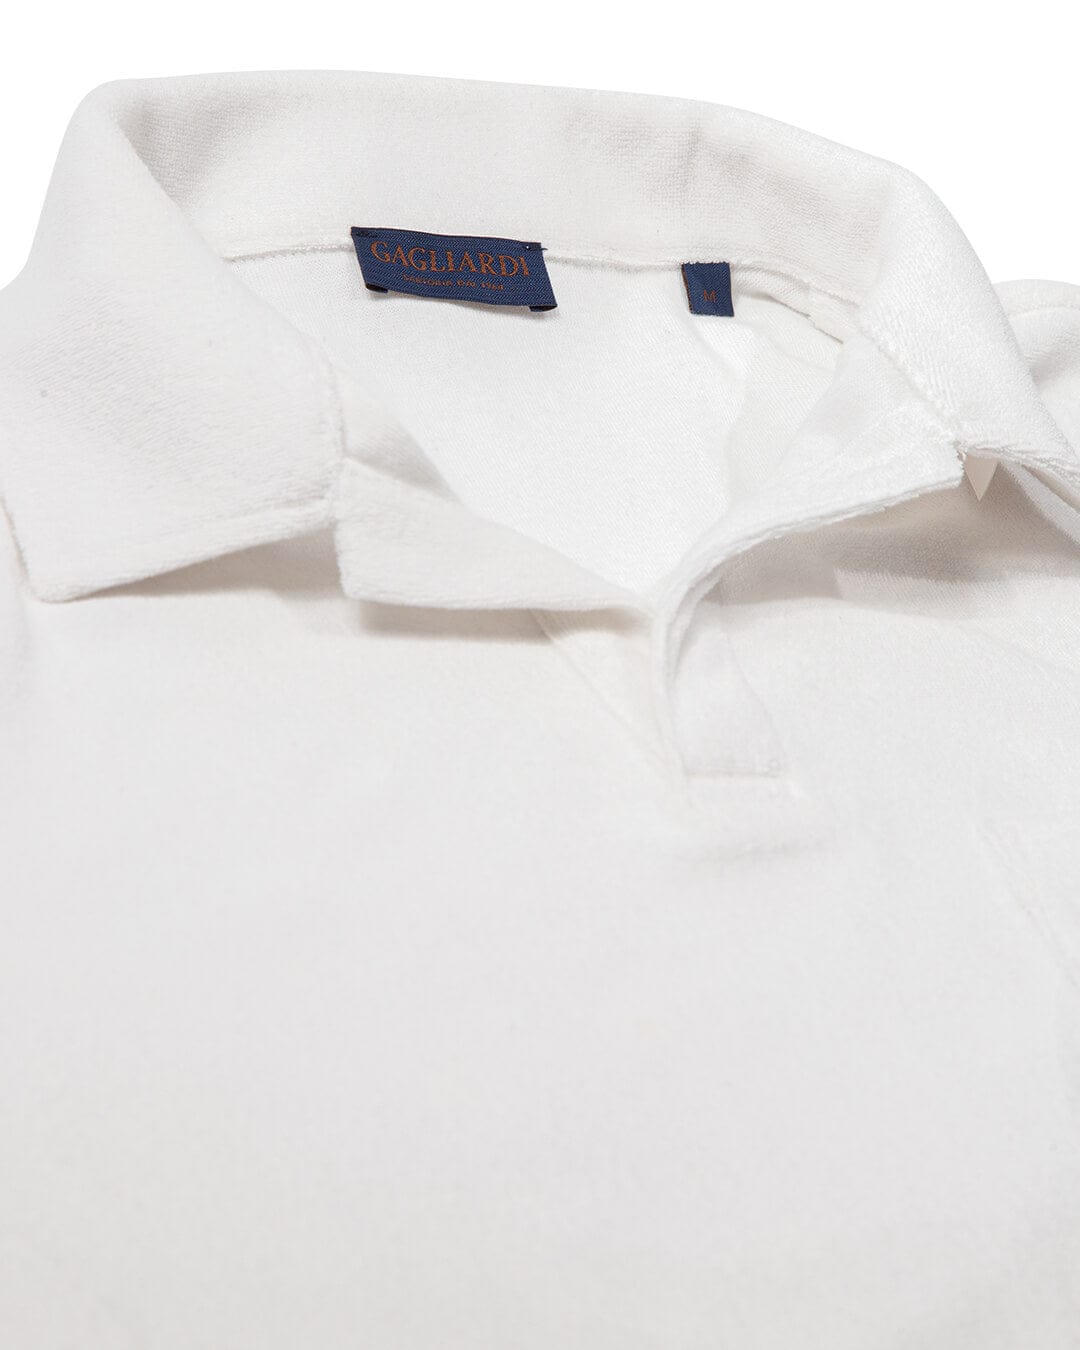 Gagliardi Polo Shirts Gagliardi White Terry Toweling Resort Collar Polo Shirt